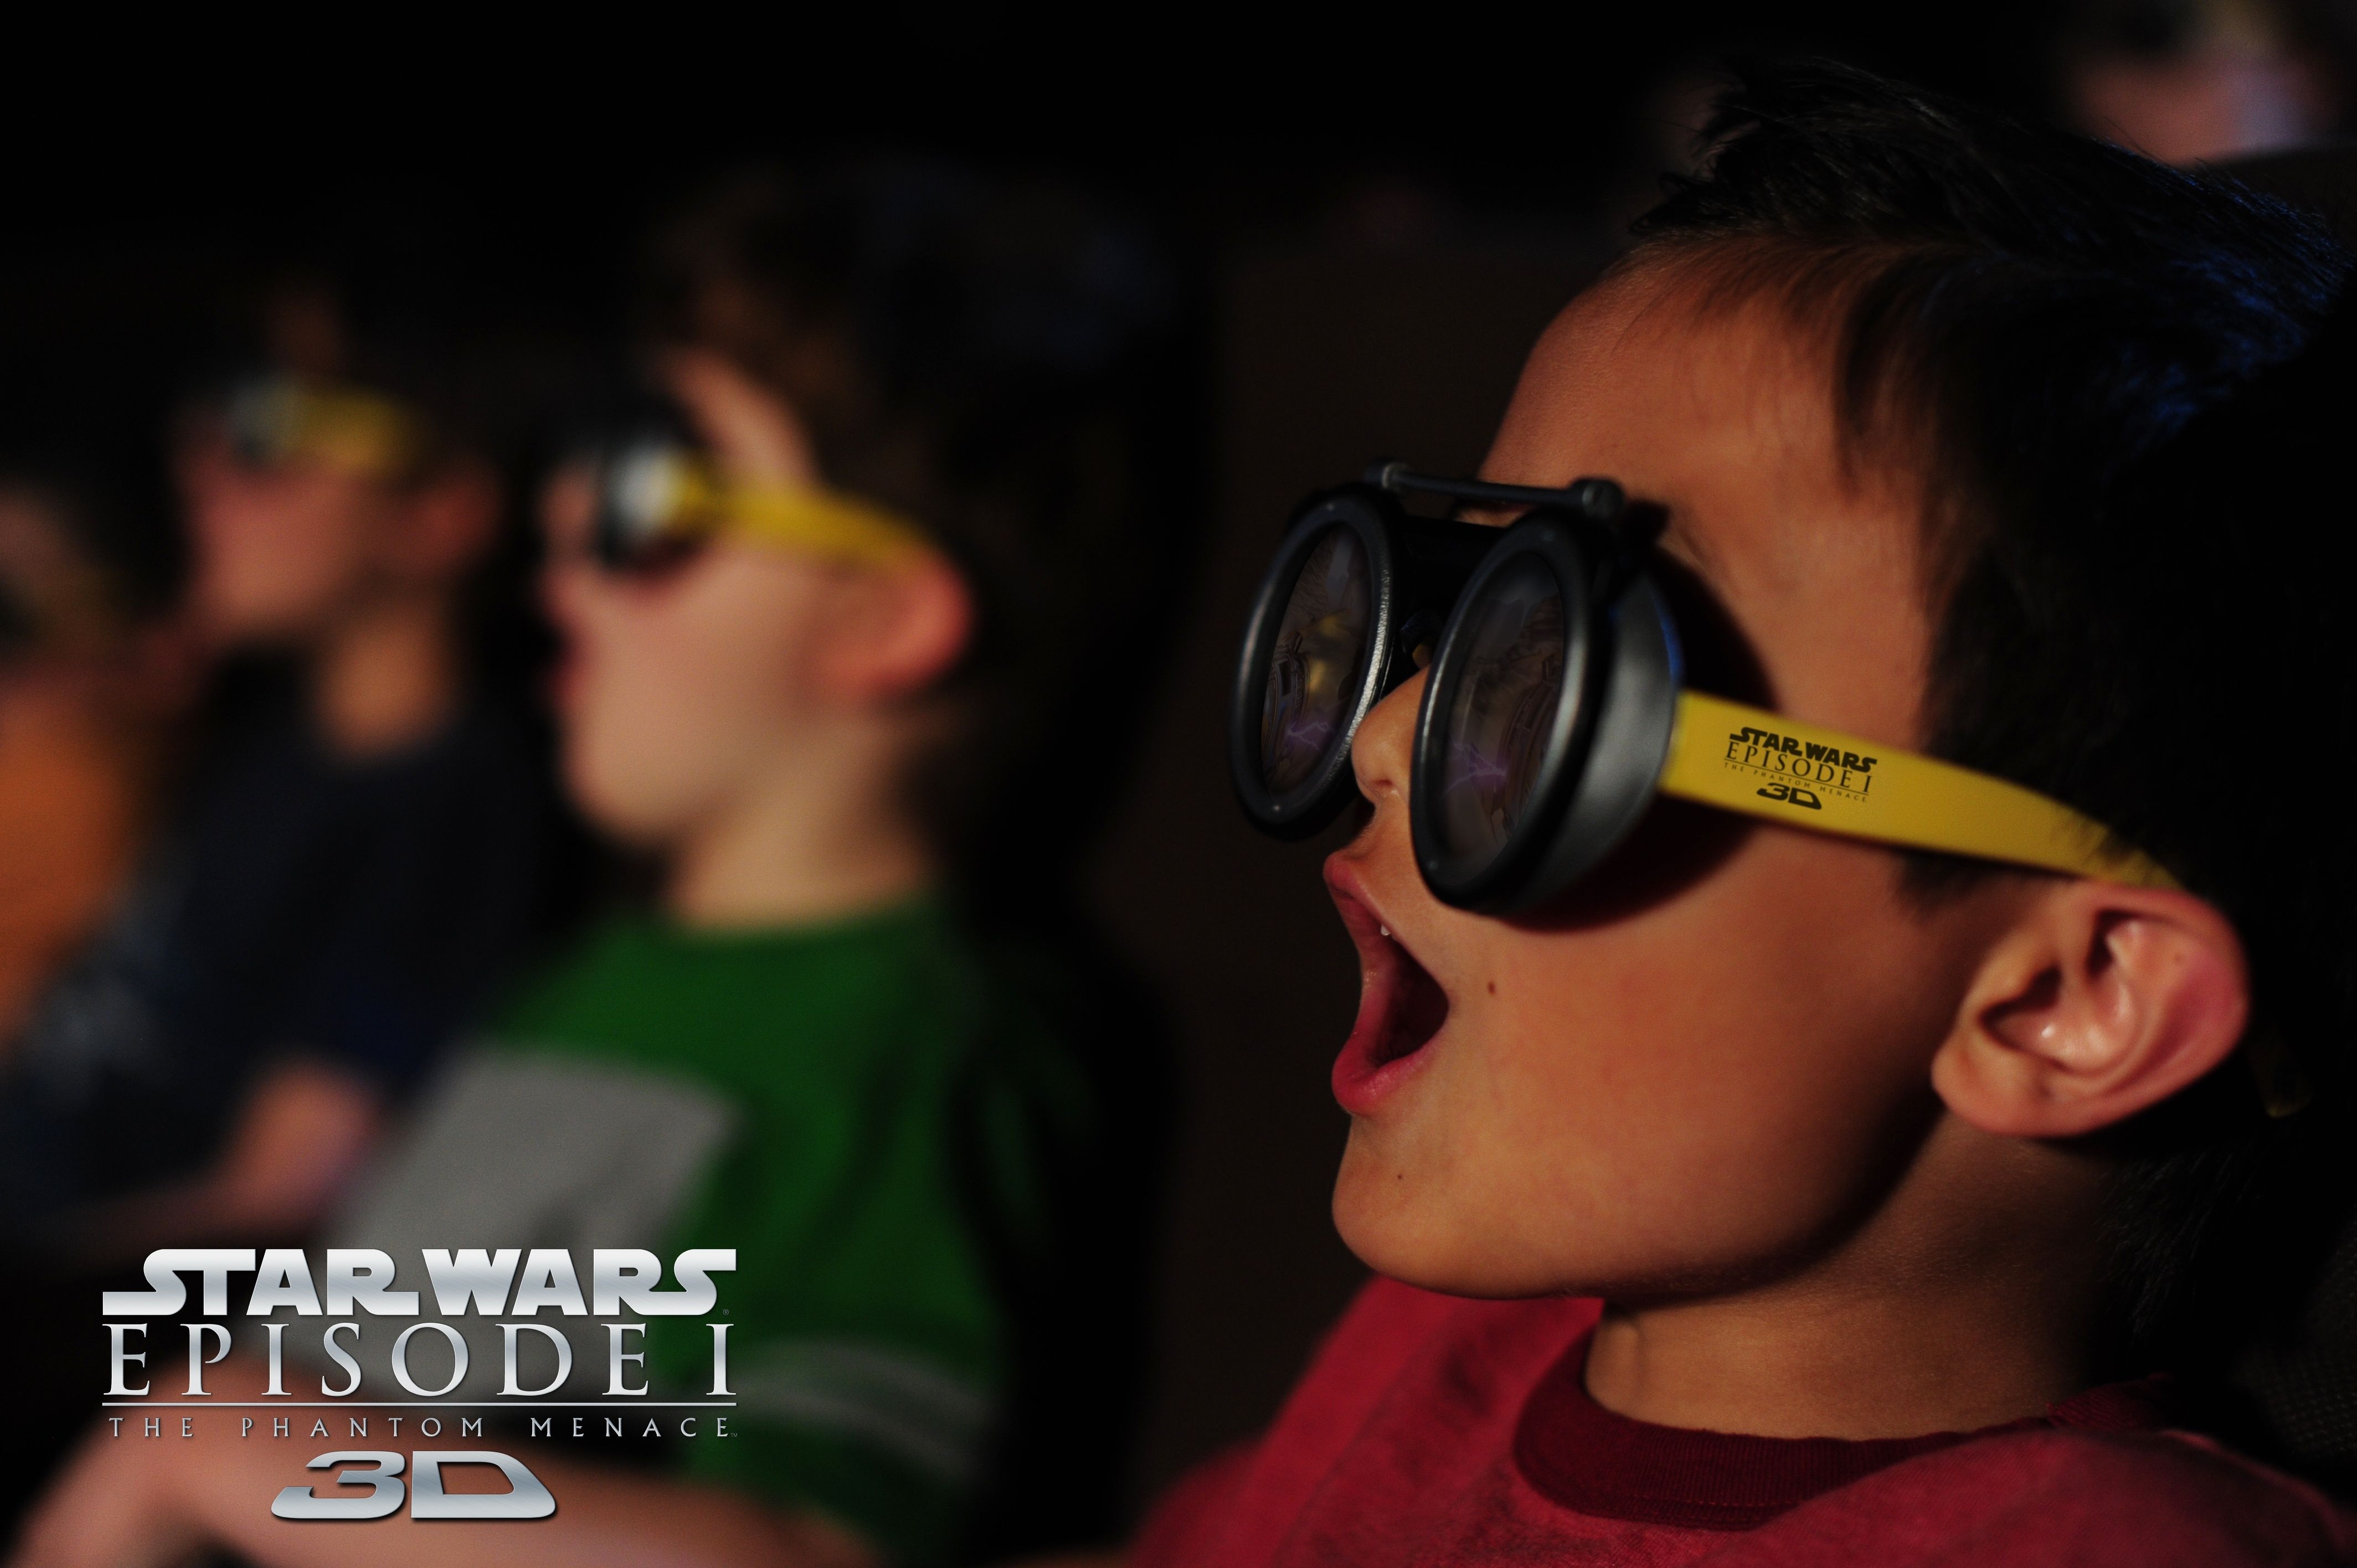 Star Wars: Episode I - The Phantom Menace 3D pod racer glasses photo #1